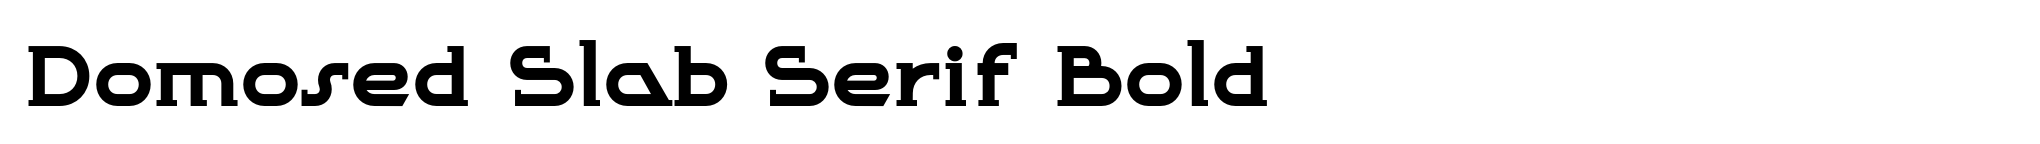 Domosed Slab Serif Bold image